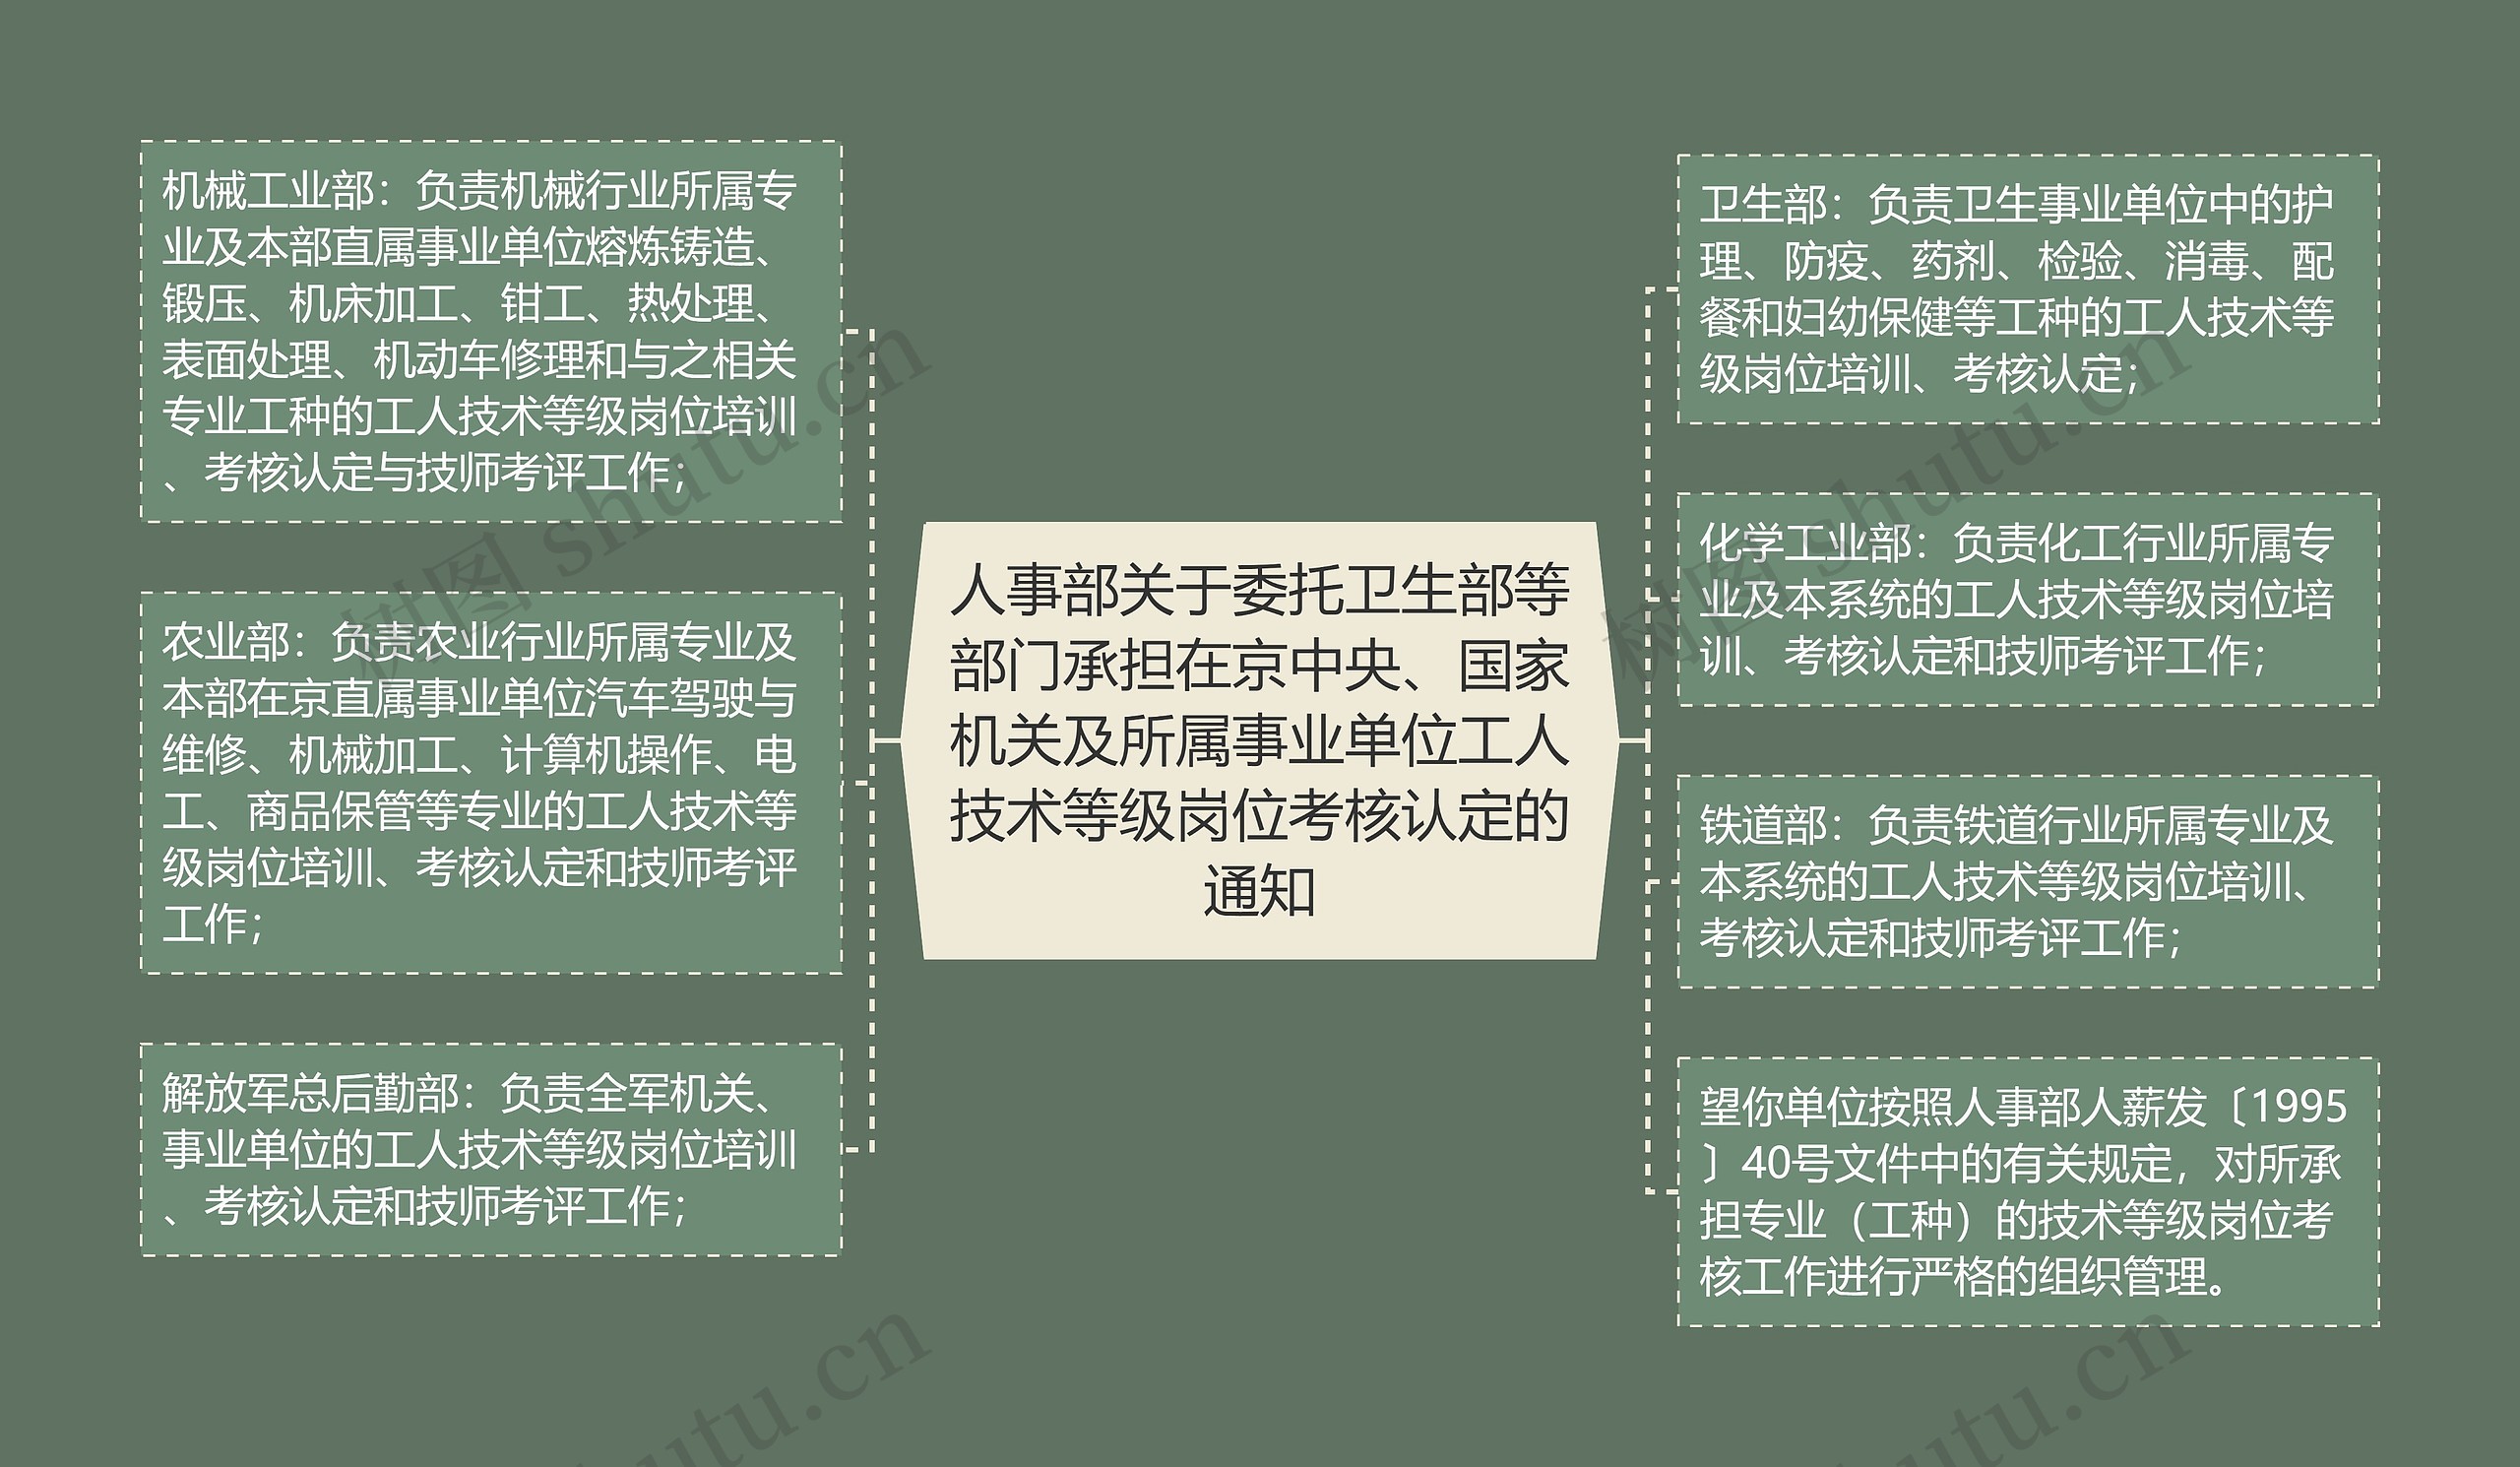 人事部关于委托卫生部等部门承担在京中央、国家机关及所属事业单位工人技术等级岗位考核认定的通知